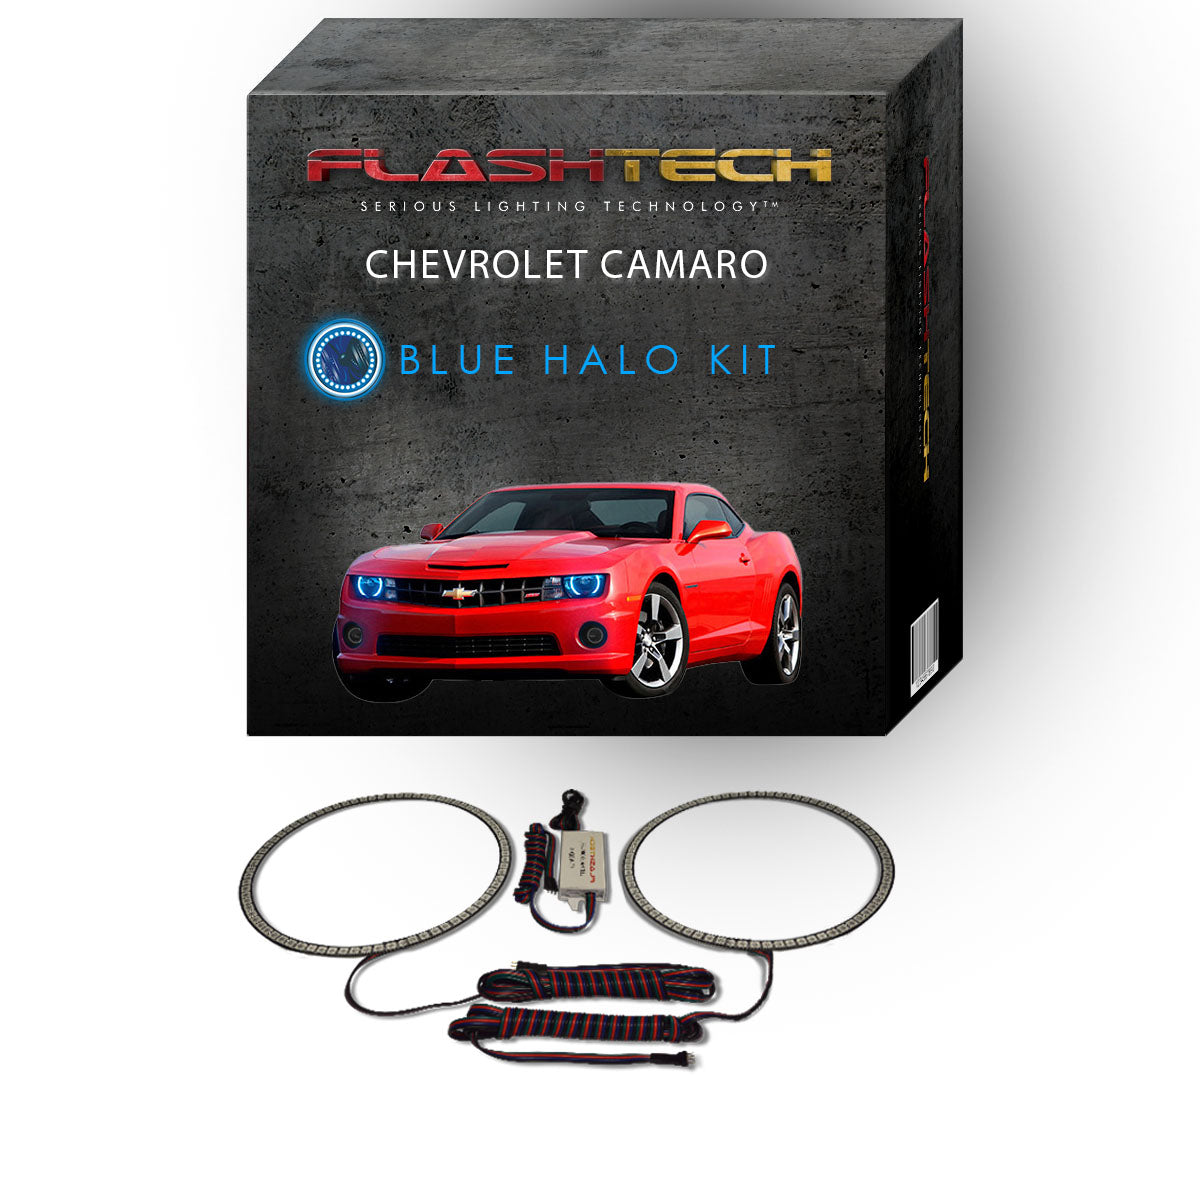 Chevrolet-Camaro-2010, 2011, 2012, 2013-LED-Halo-Headlights-RGB-No Remote-CY-CANR1013-V3H